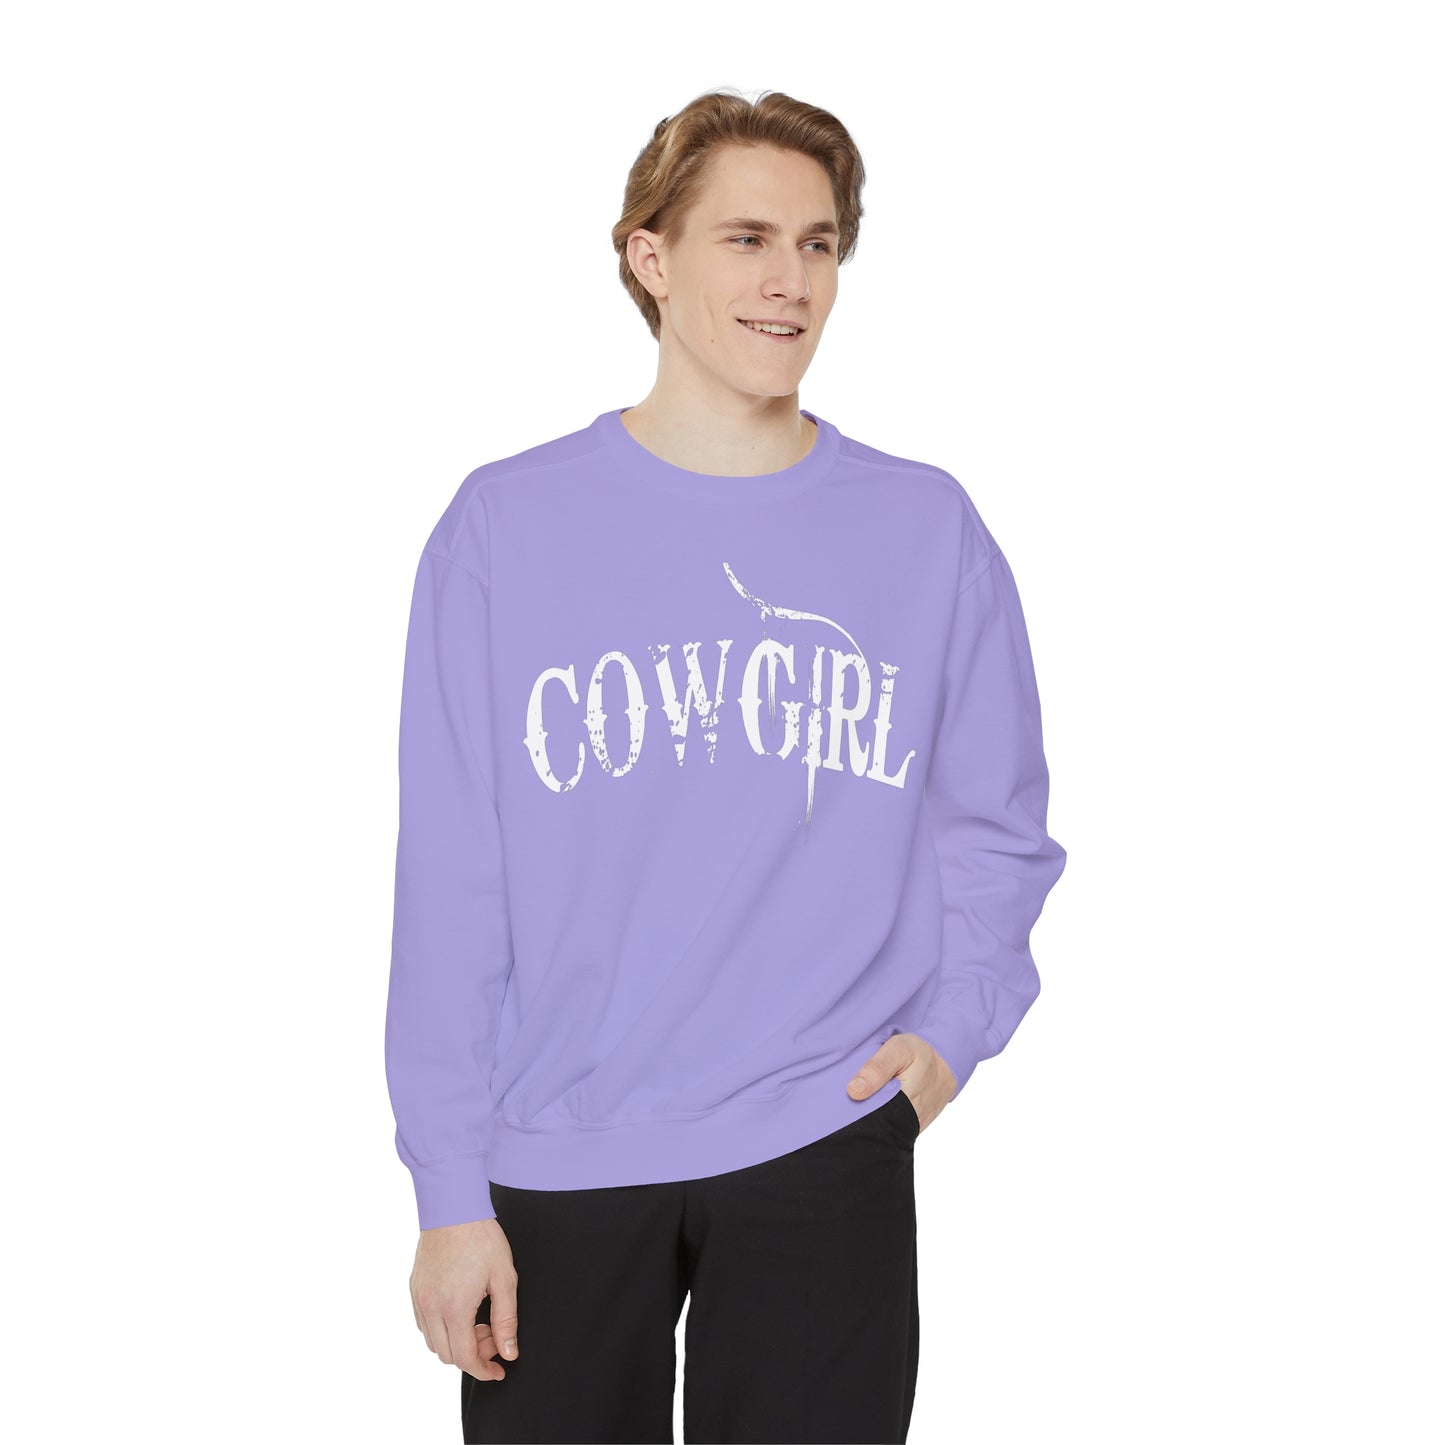 Cowgirl Sweatshirt